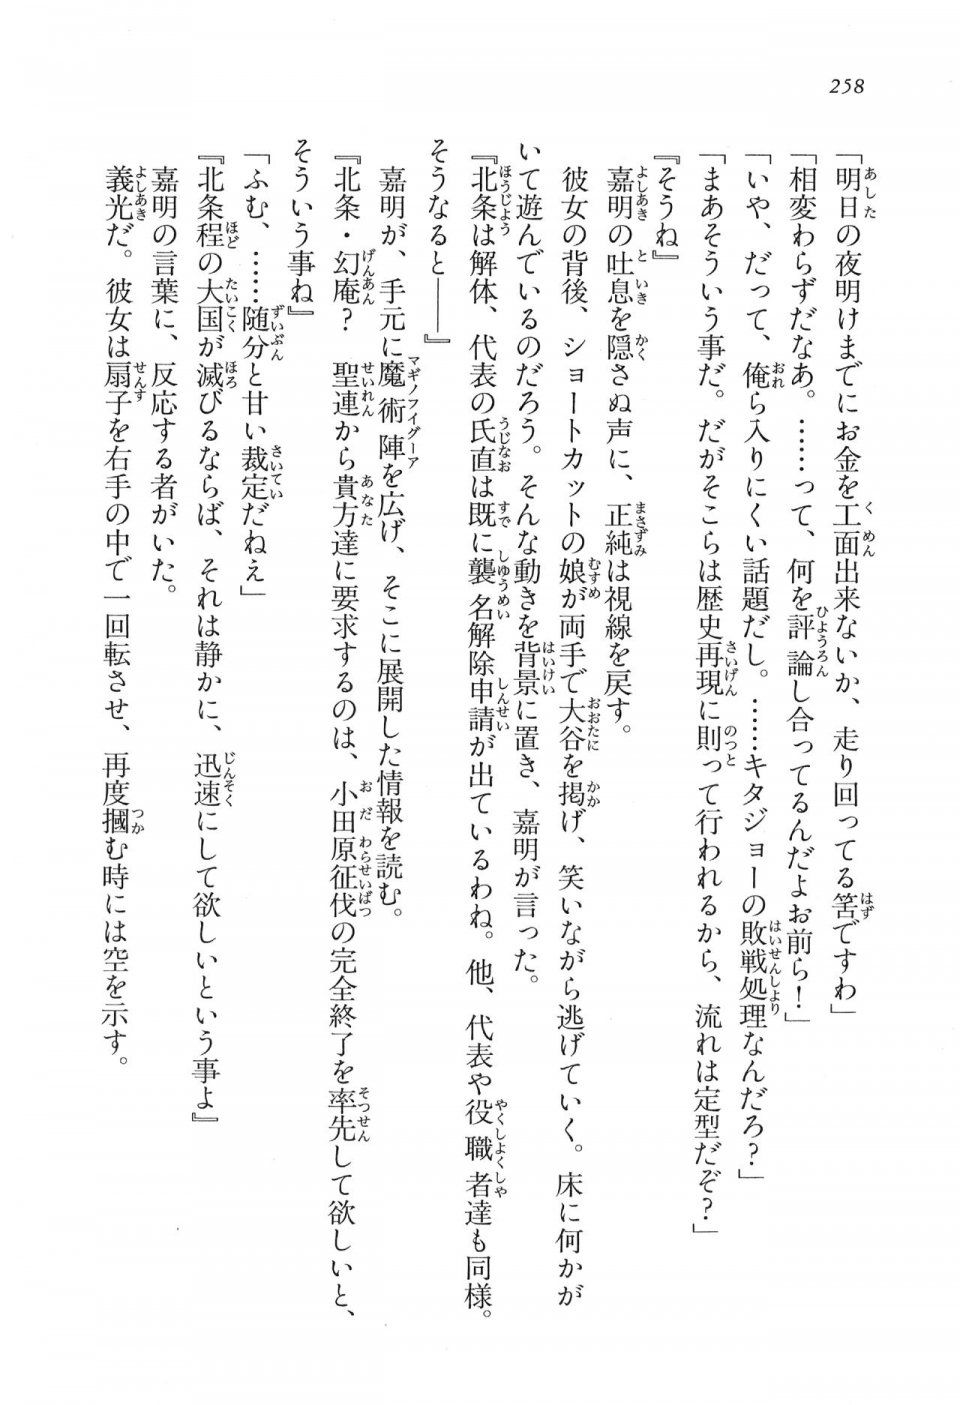 Kyoukai Senjou no Horizon LN Vol 16(7A) - Photo #258